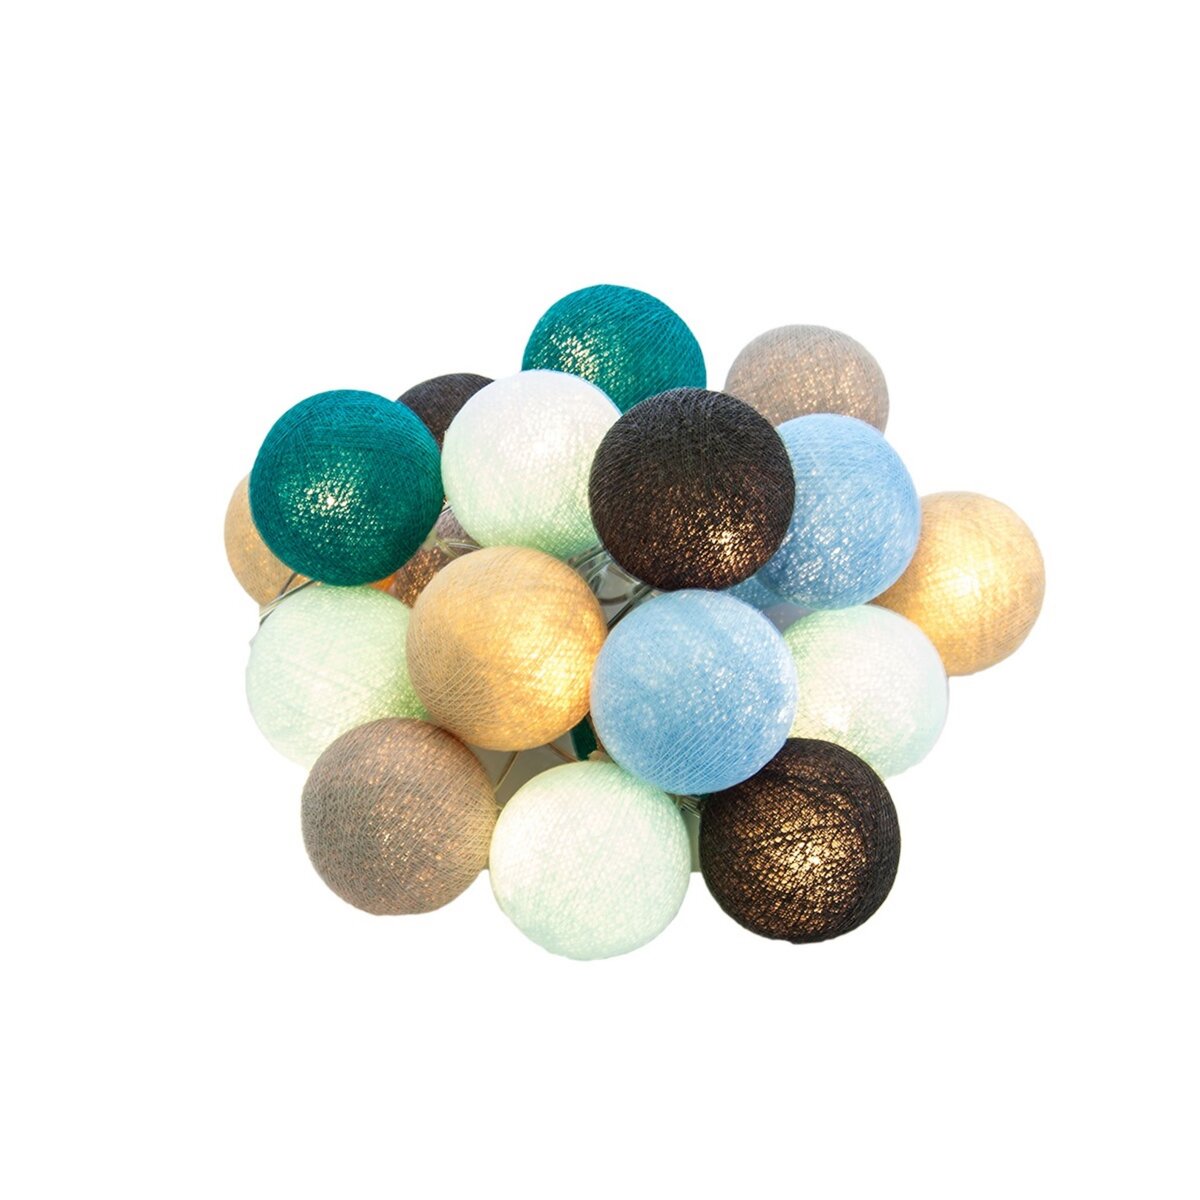 Guirlande lumineuse de 20 boules coloris bleu, gris et lin